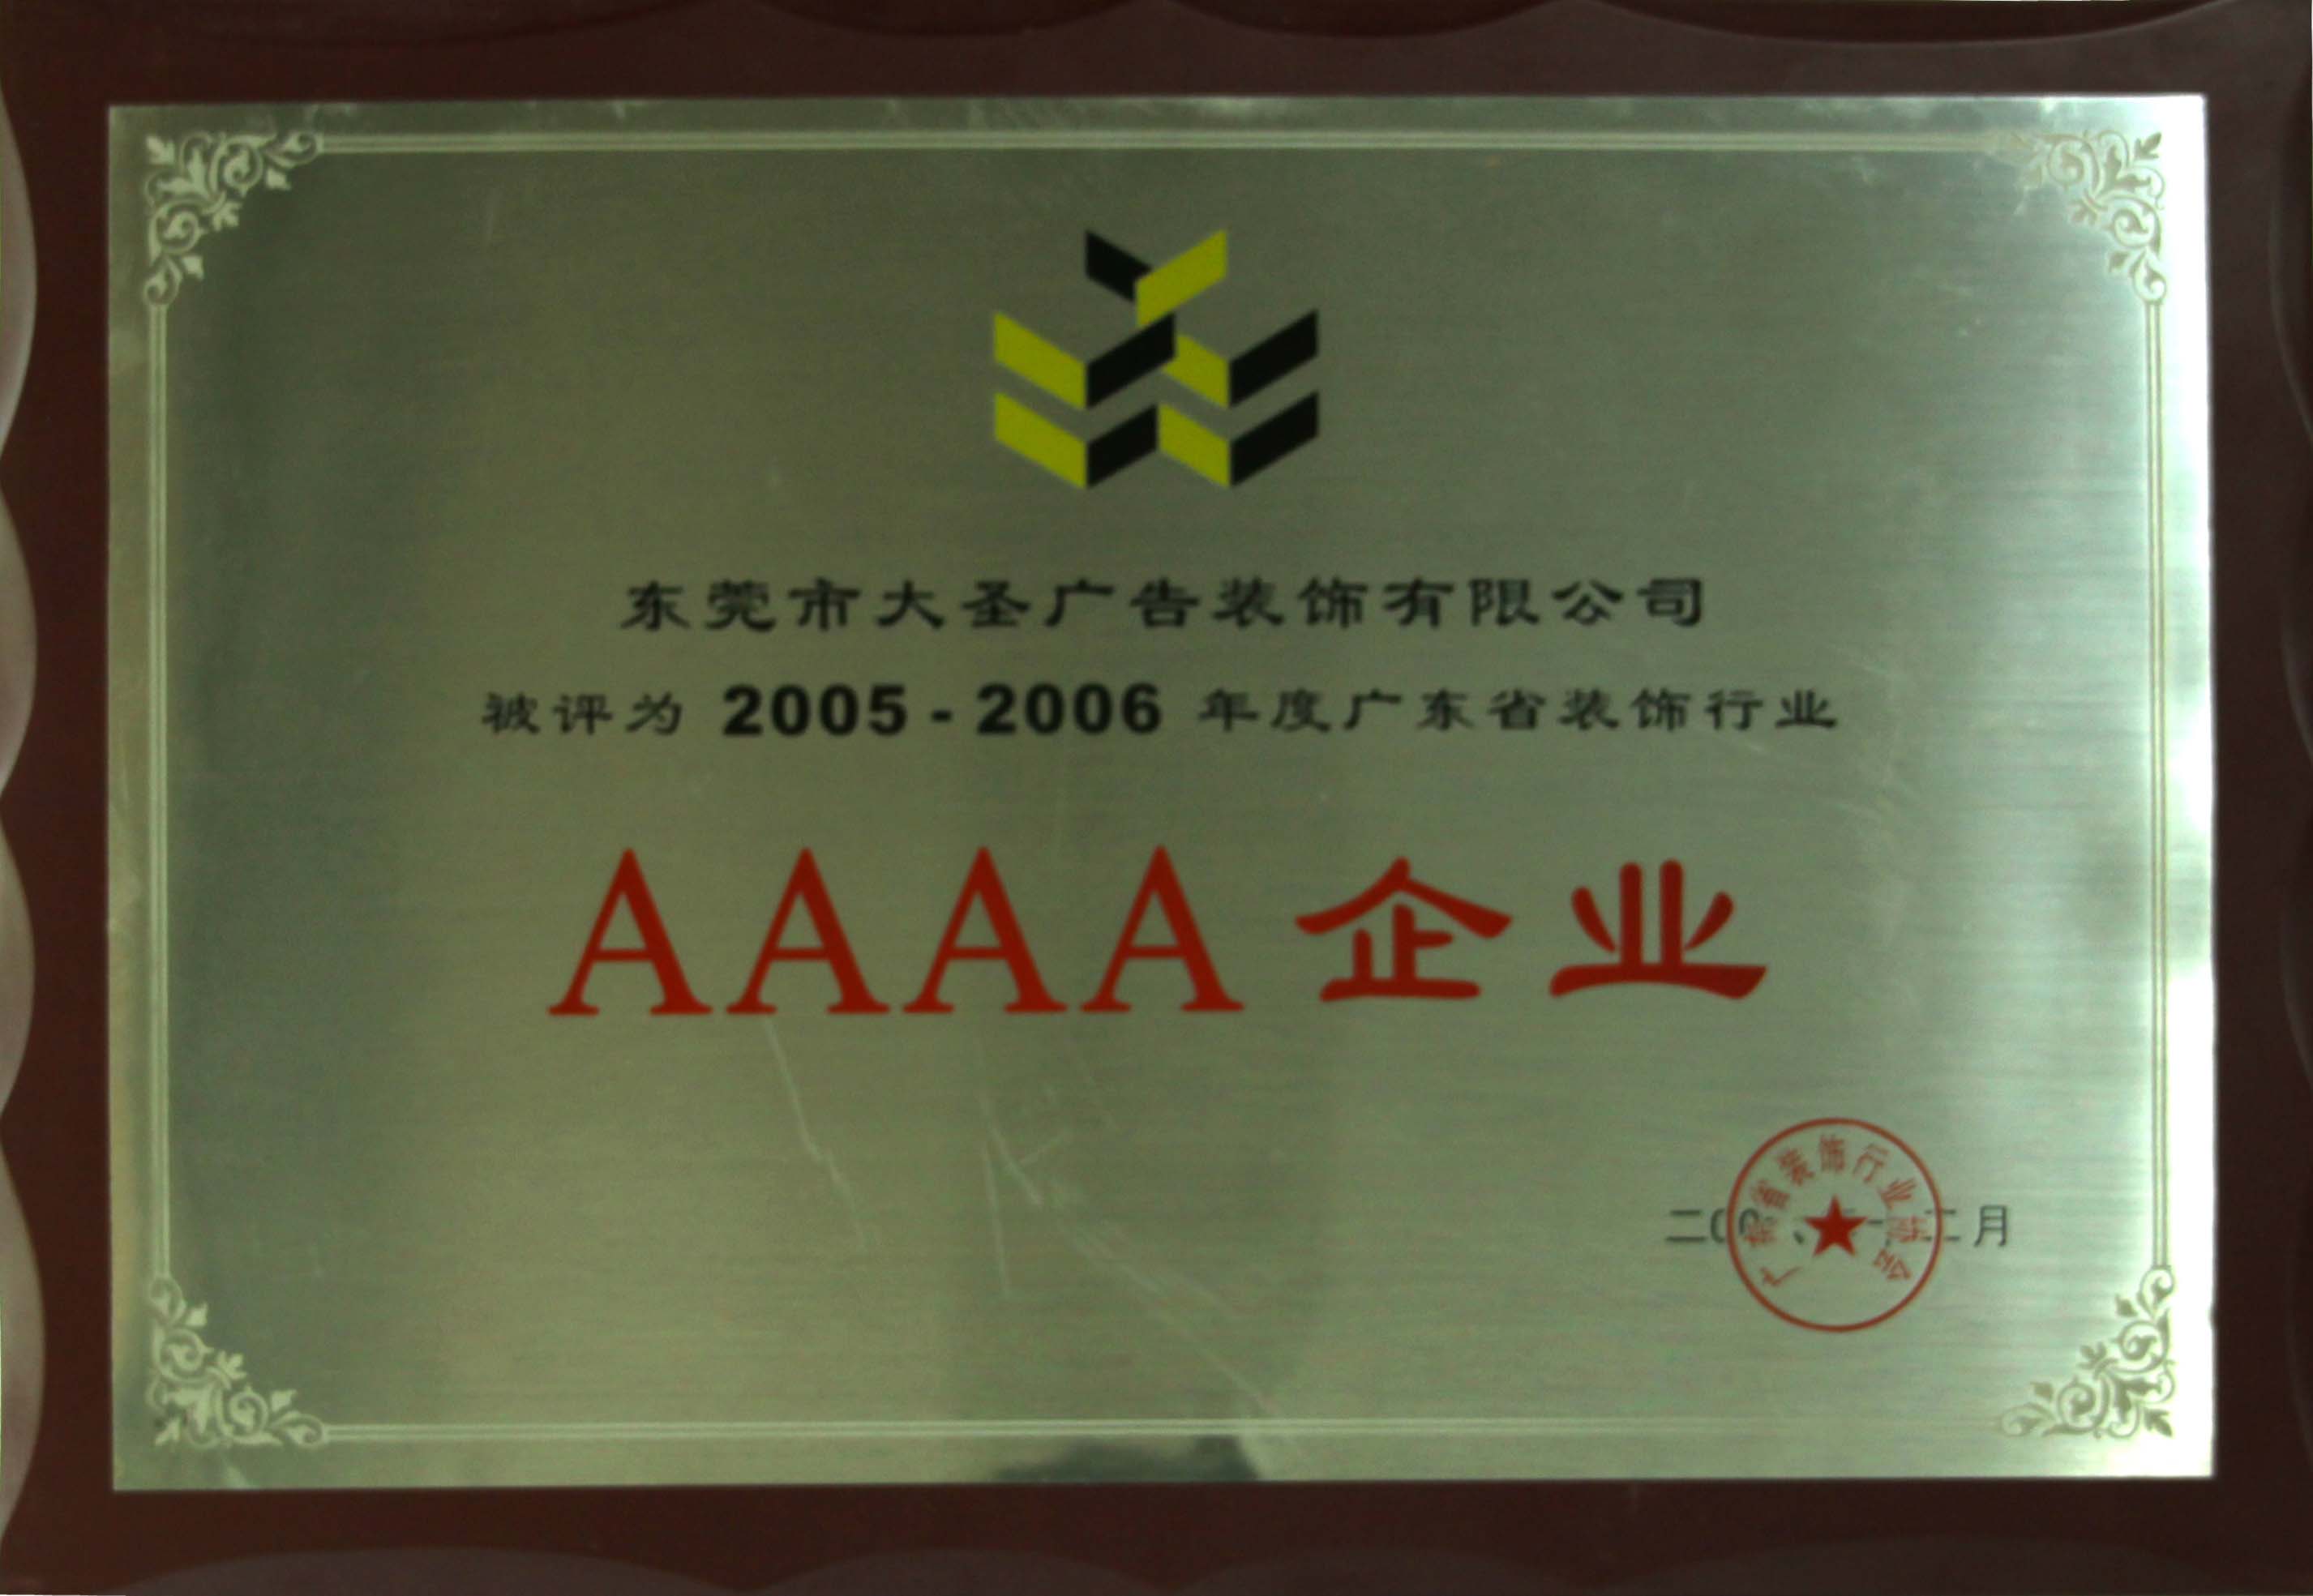 2005年-2006年 广东省装饰行业AAAA企业